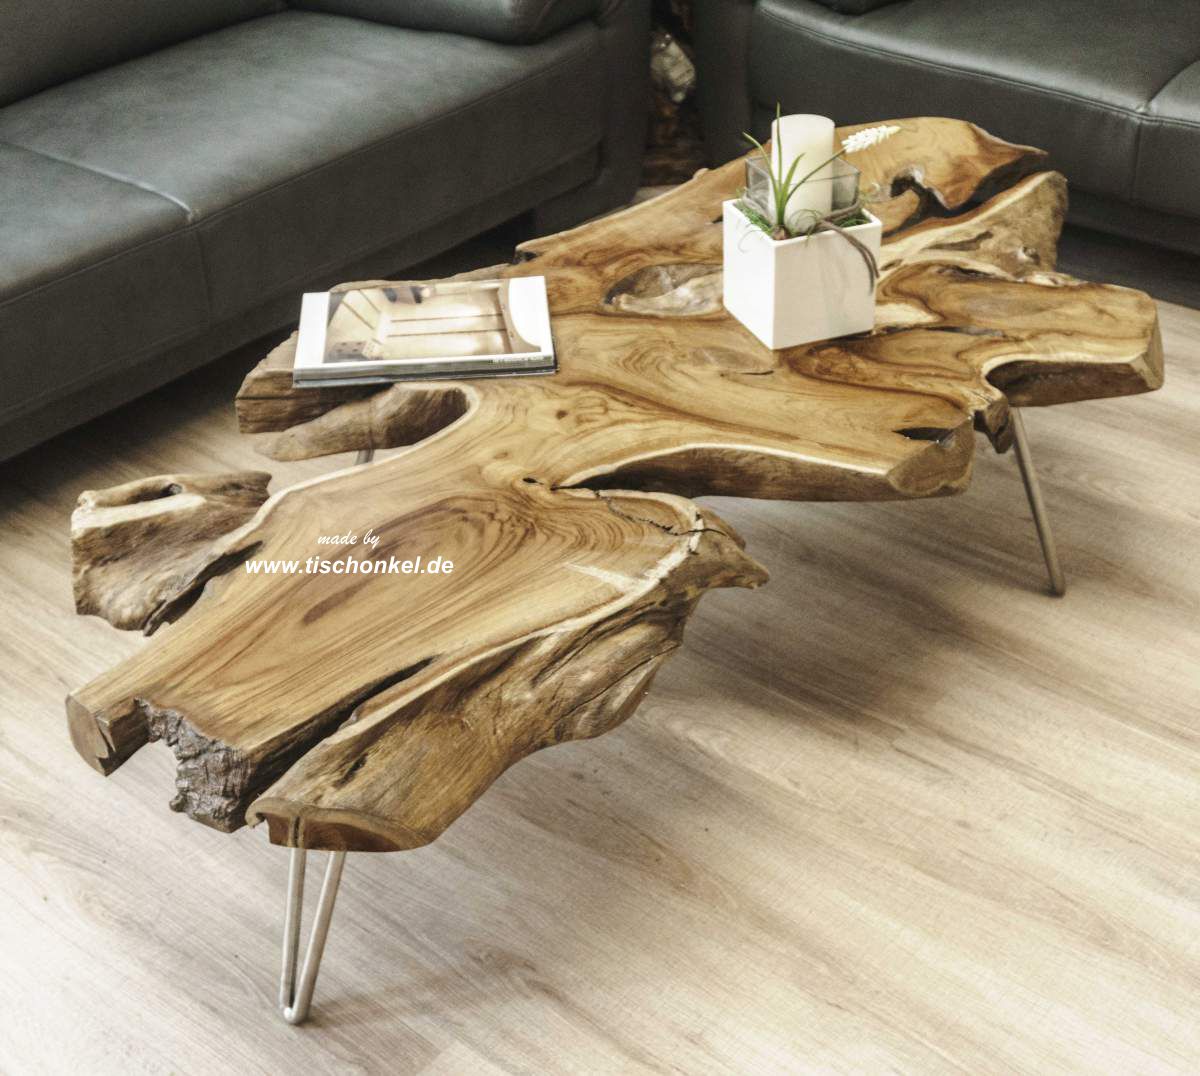 Naturholz Couchtisch aus einer Baumscheibe   Der Tischonkel